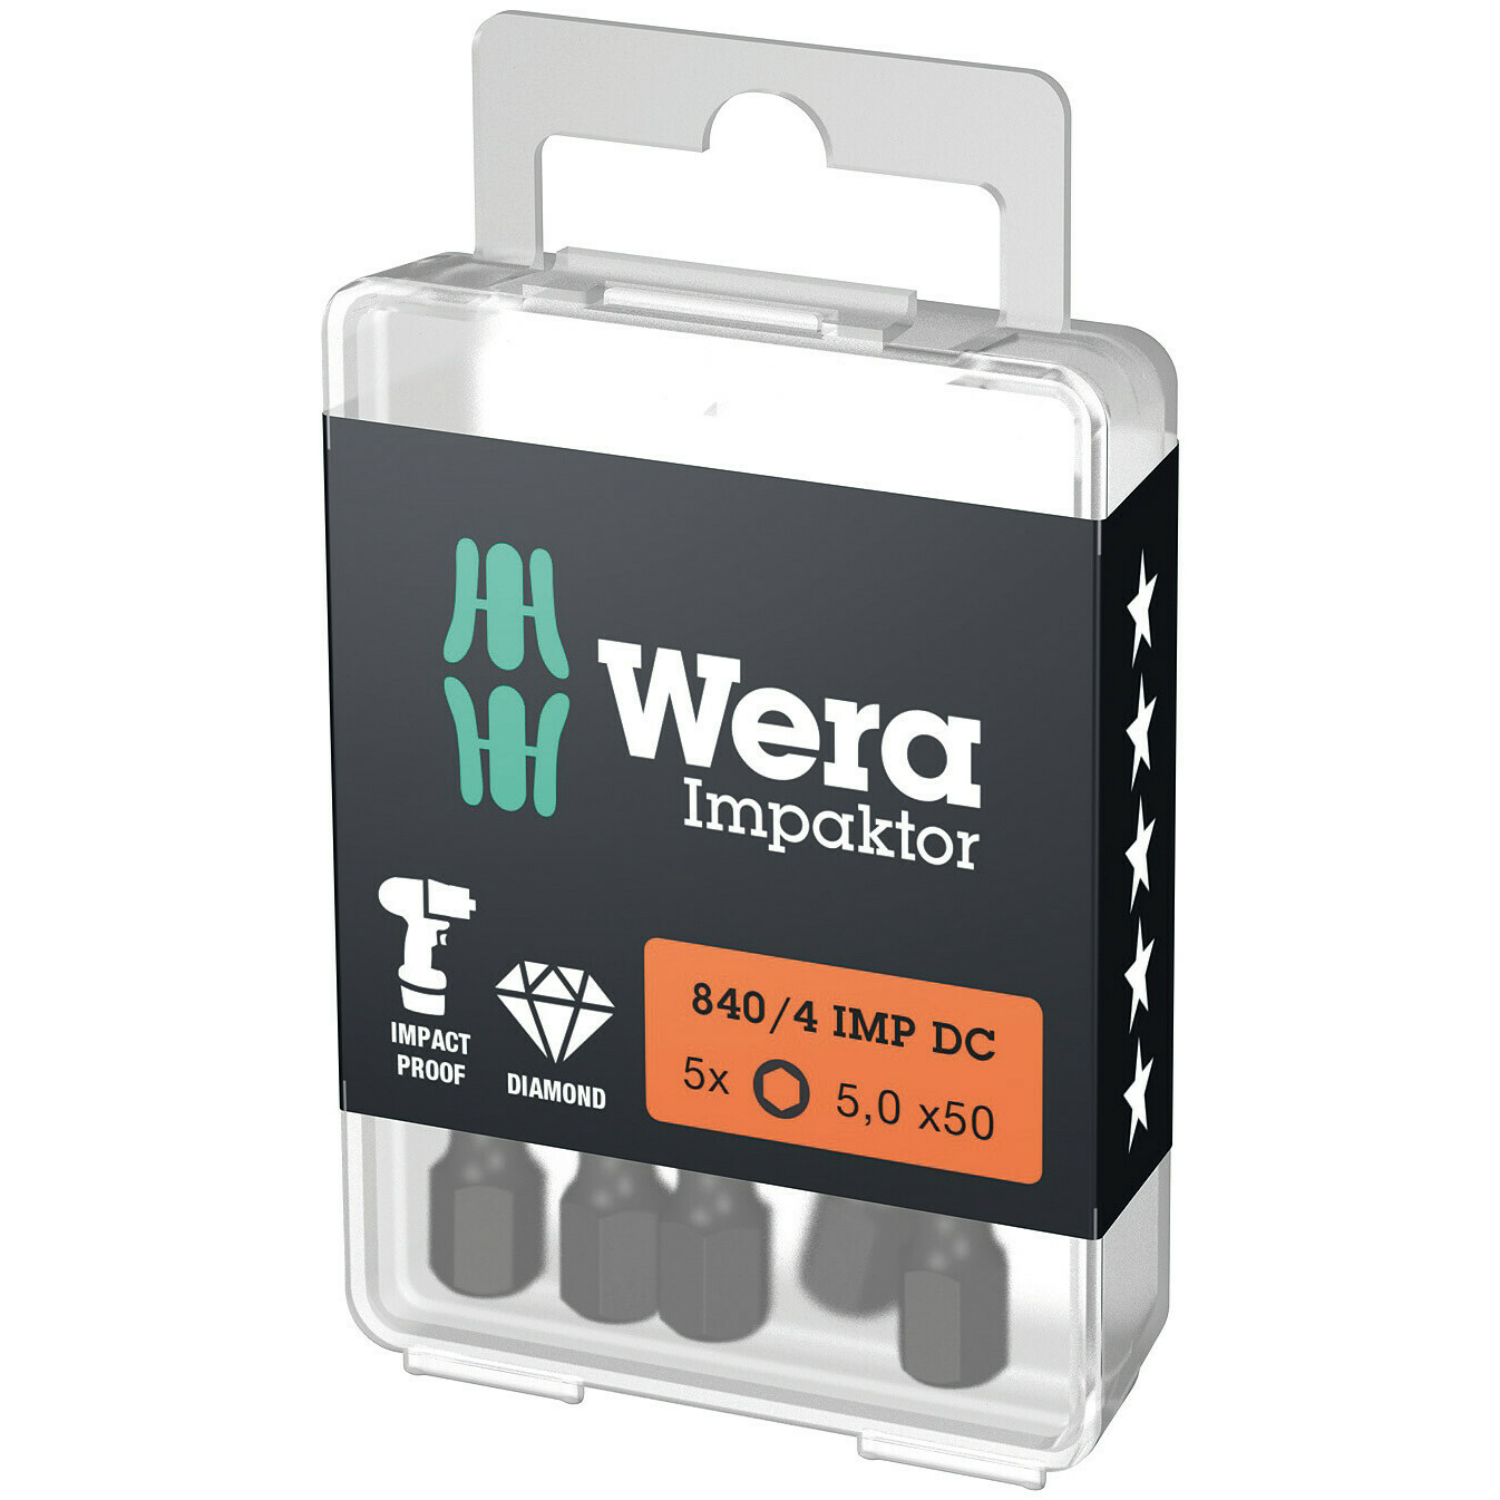 Wera 840/4 Embouts Hex-Plus IMP DC Impaktor, 5 x 50 mm, 5 pièces-image